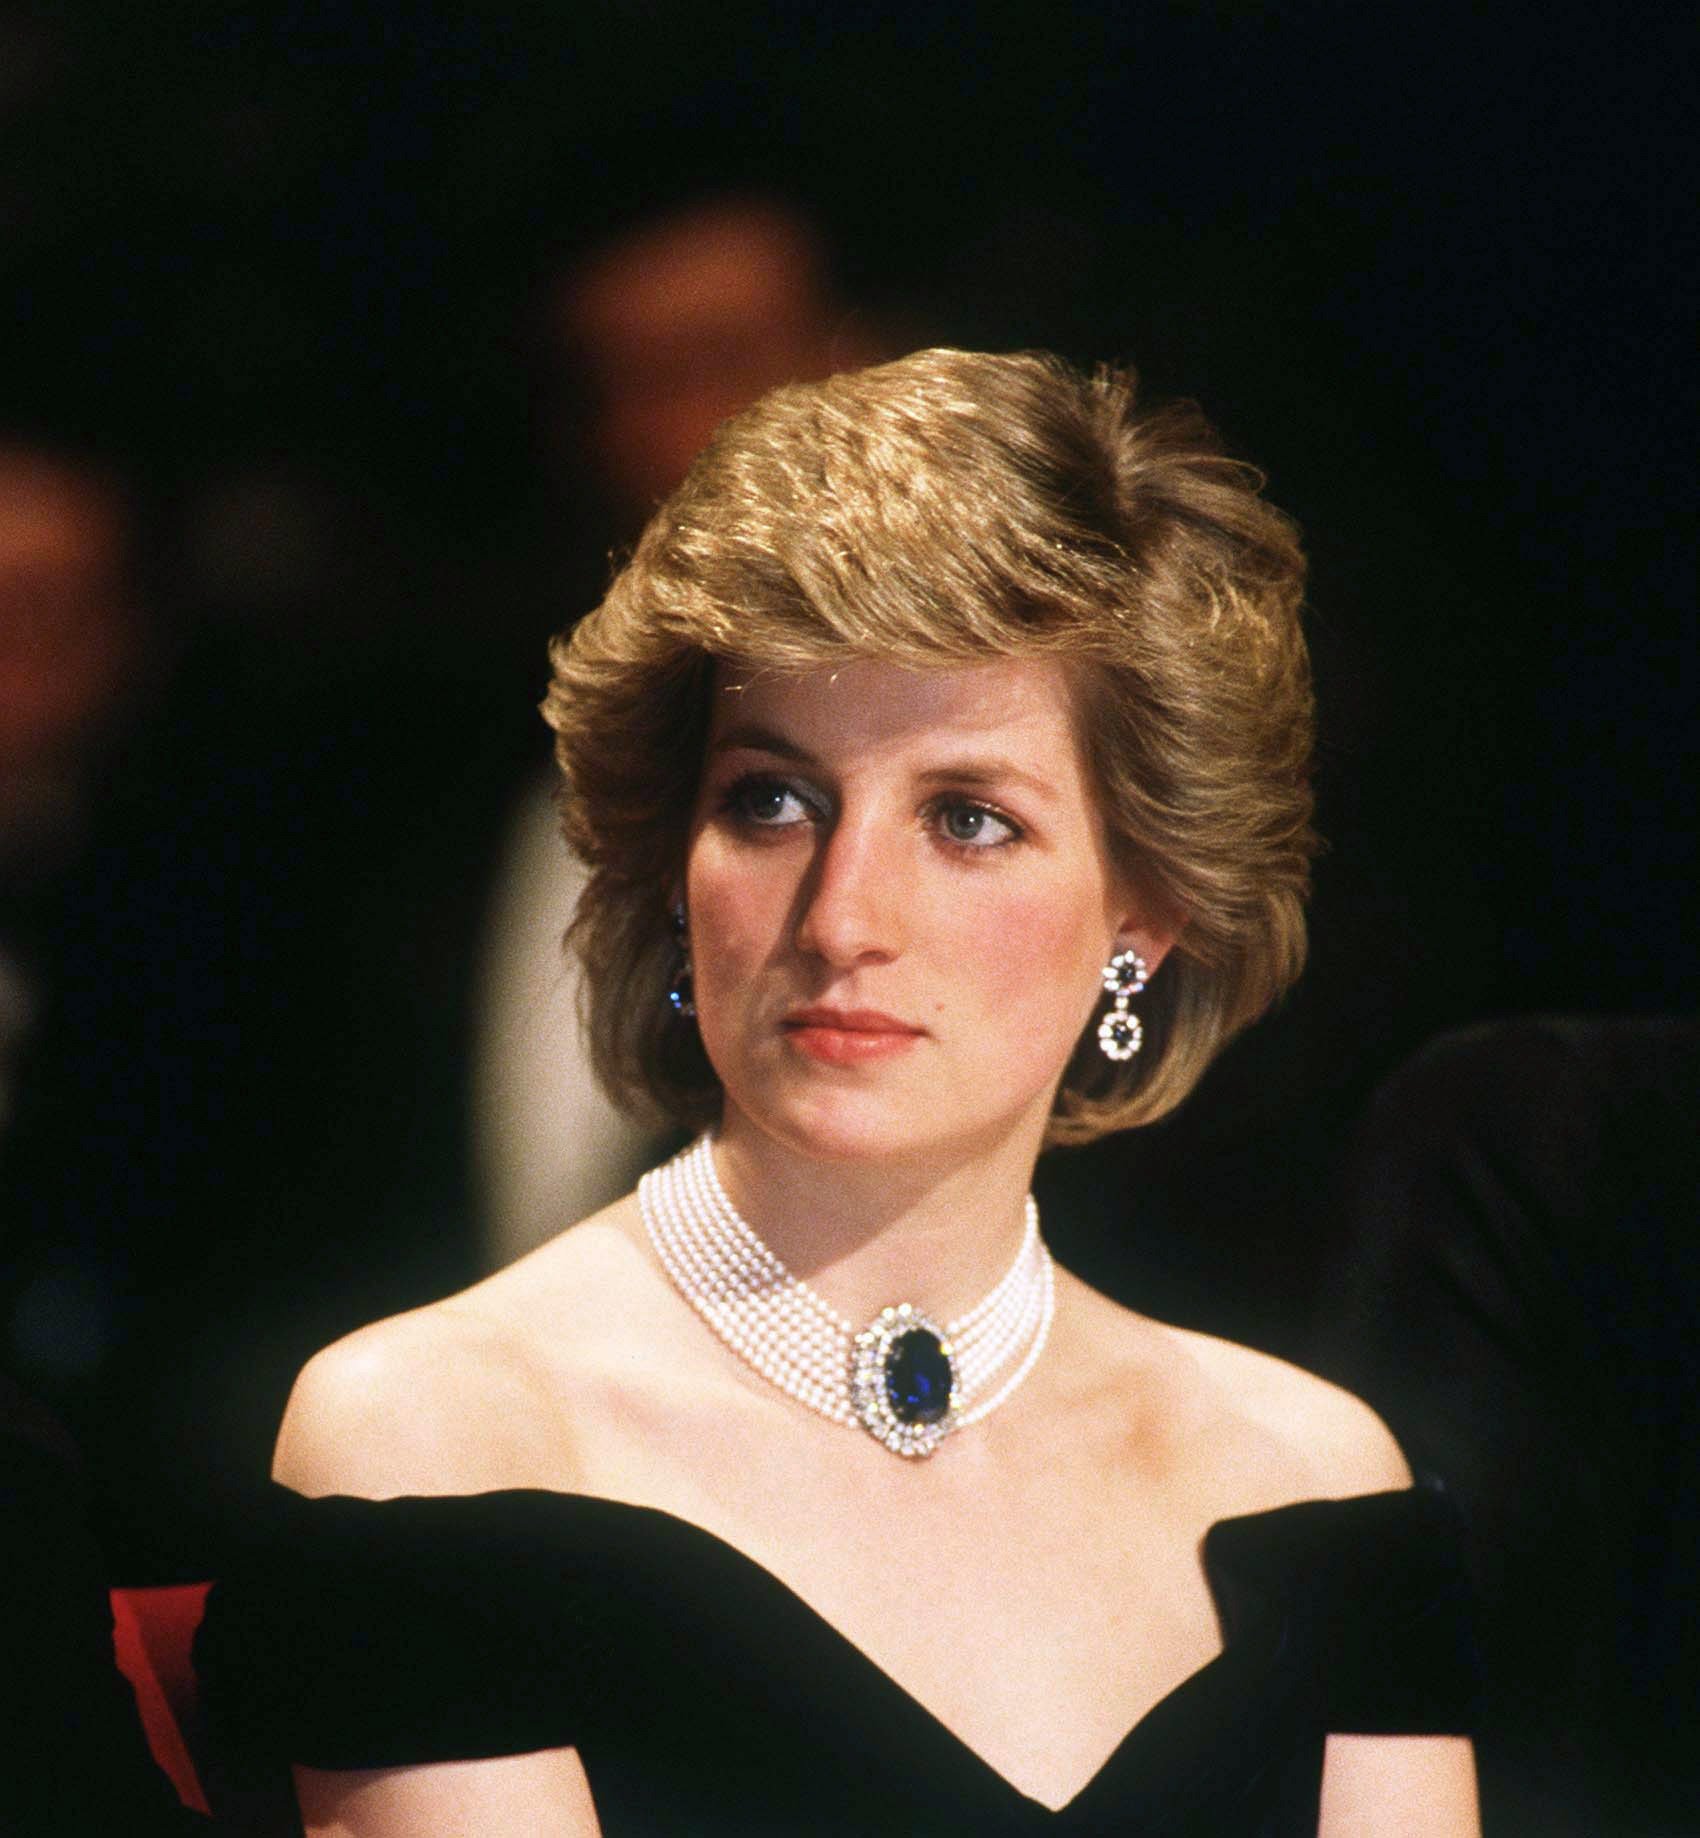 Diana, Prinzessin von Wales, nimmt am 16. April 1986 an einem Staatsbankett in Wien teil. | Quelle: Getty Images